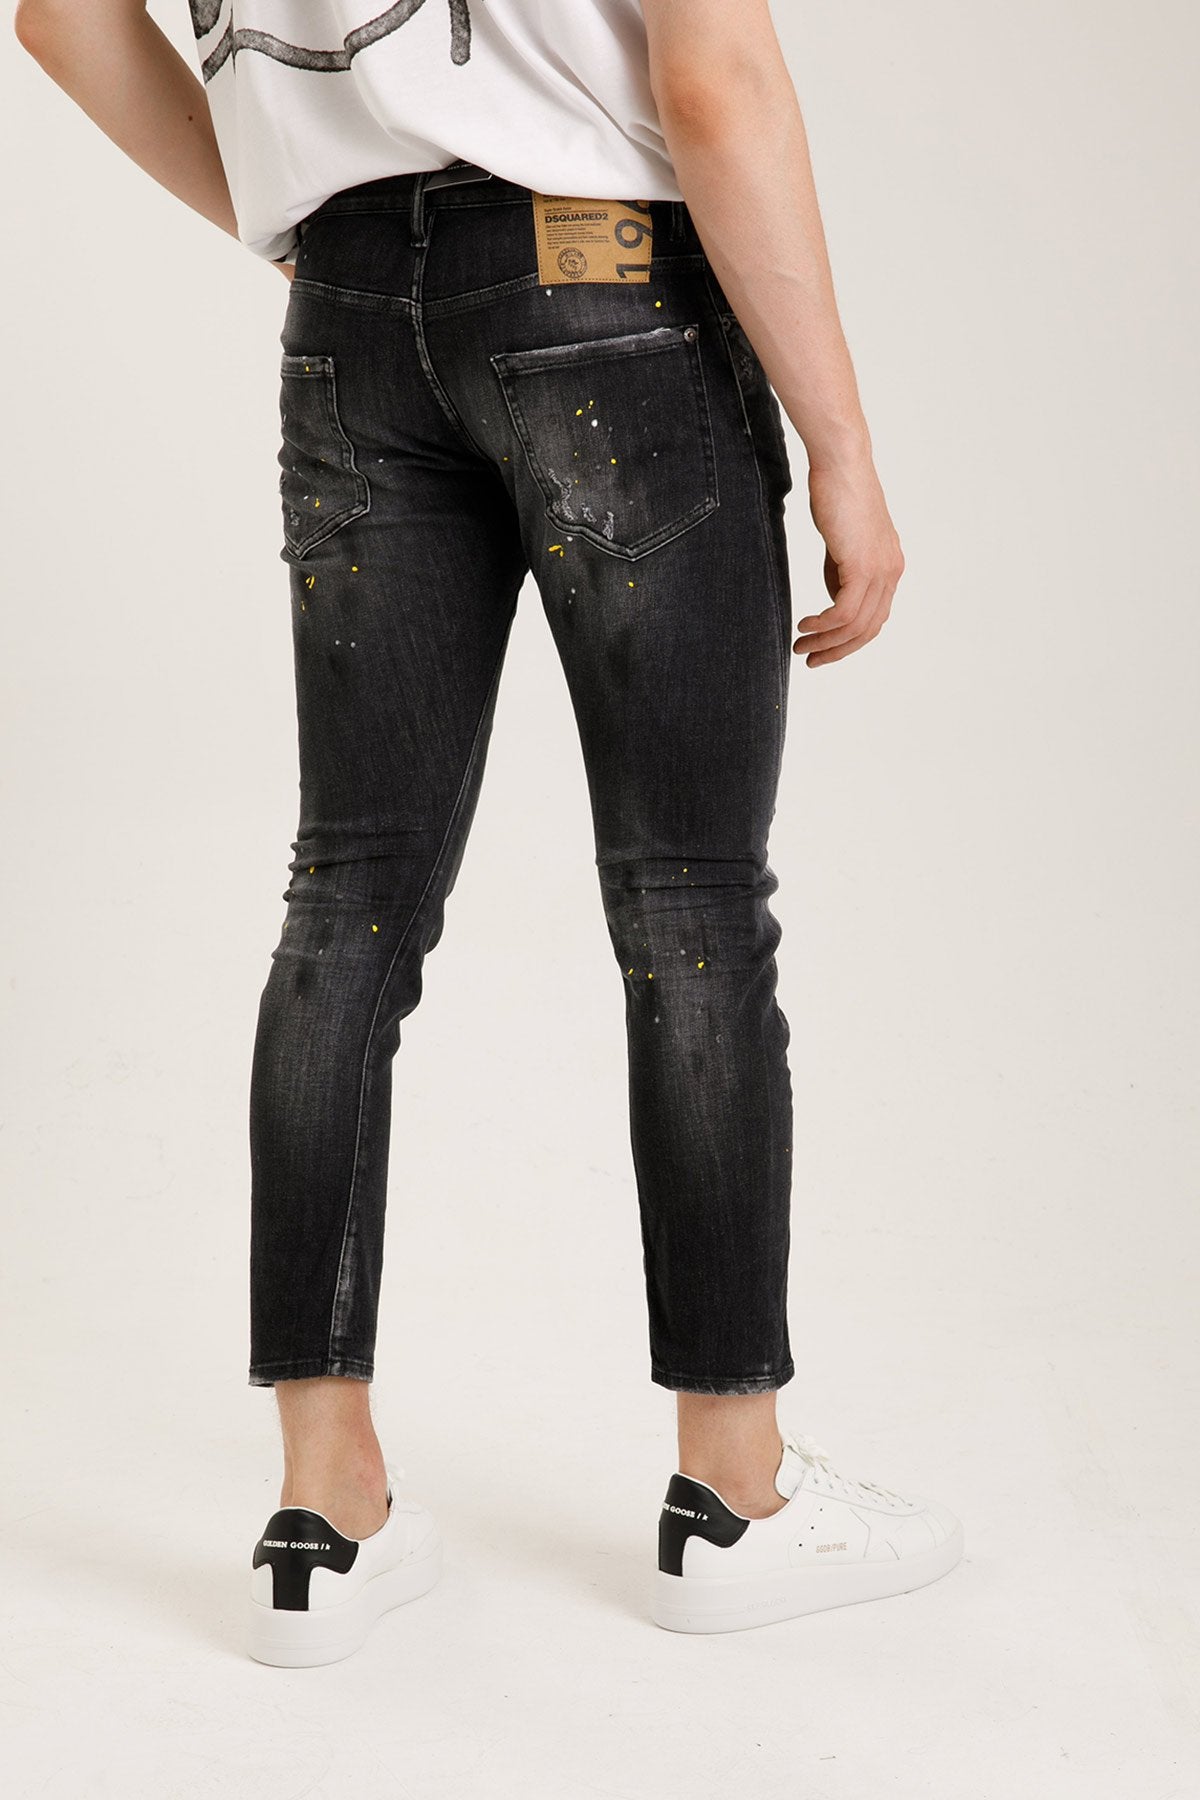 Dsquared Sexy Twist Yırtık Detaylı Jeans-Libas Trendy Fashion Store